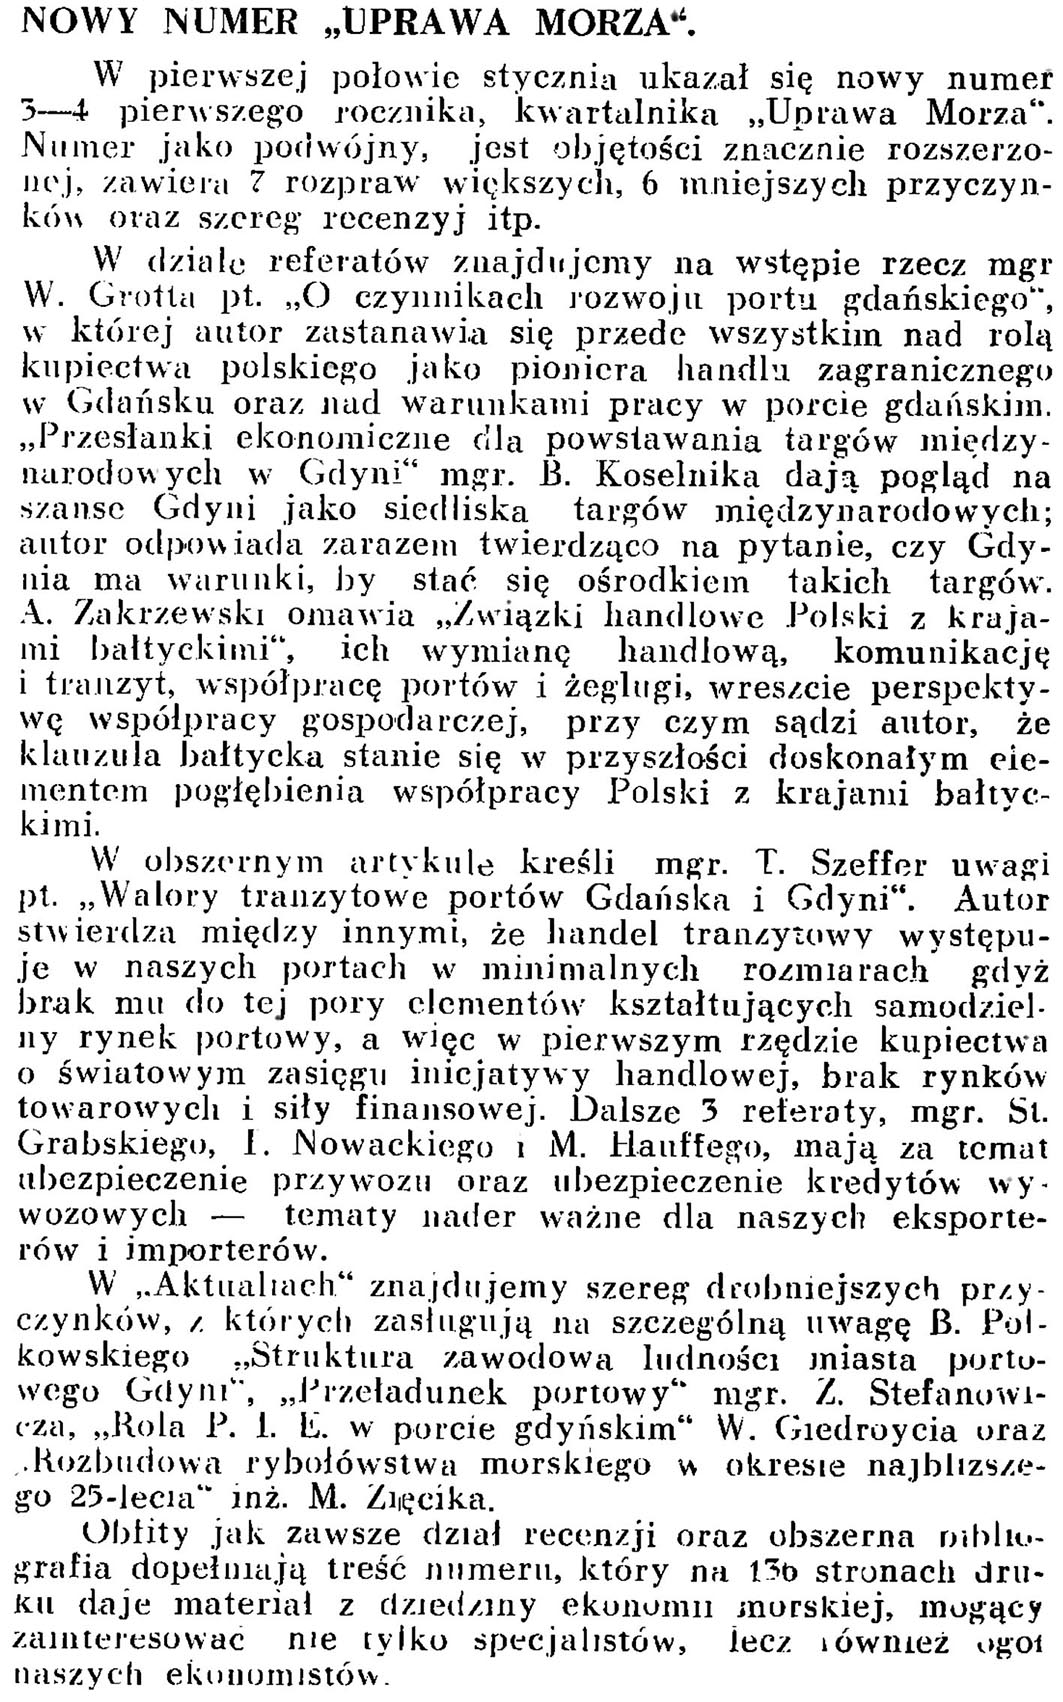 Nowy numer "Uprawa Morza" // Wiadomości Portowe. - 1939, nr 1/2, s. 23